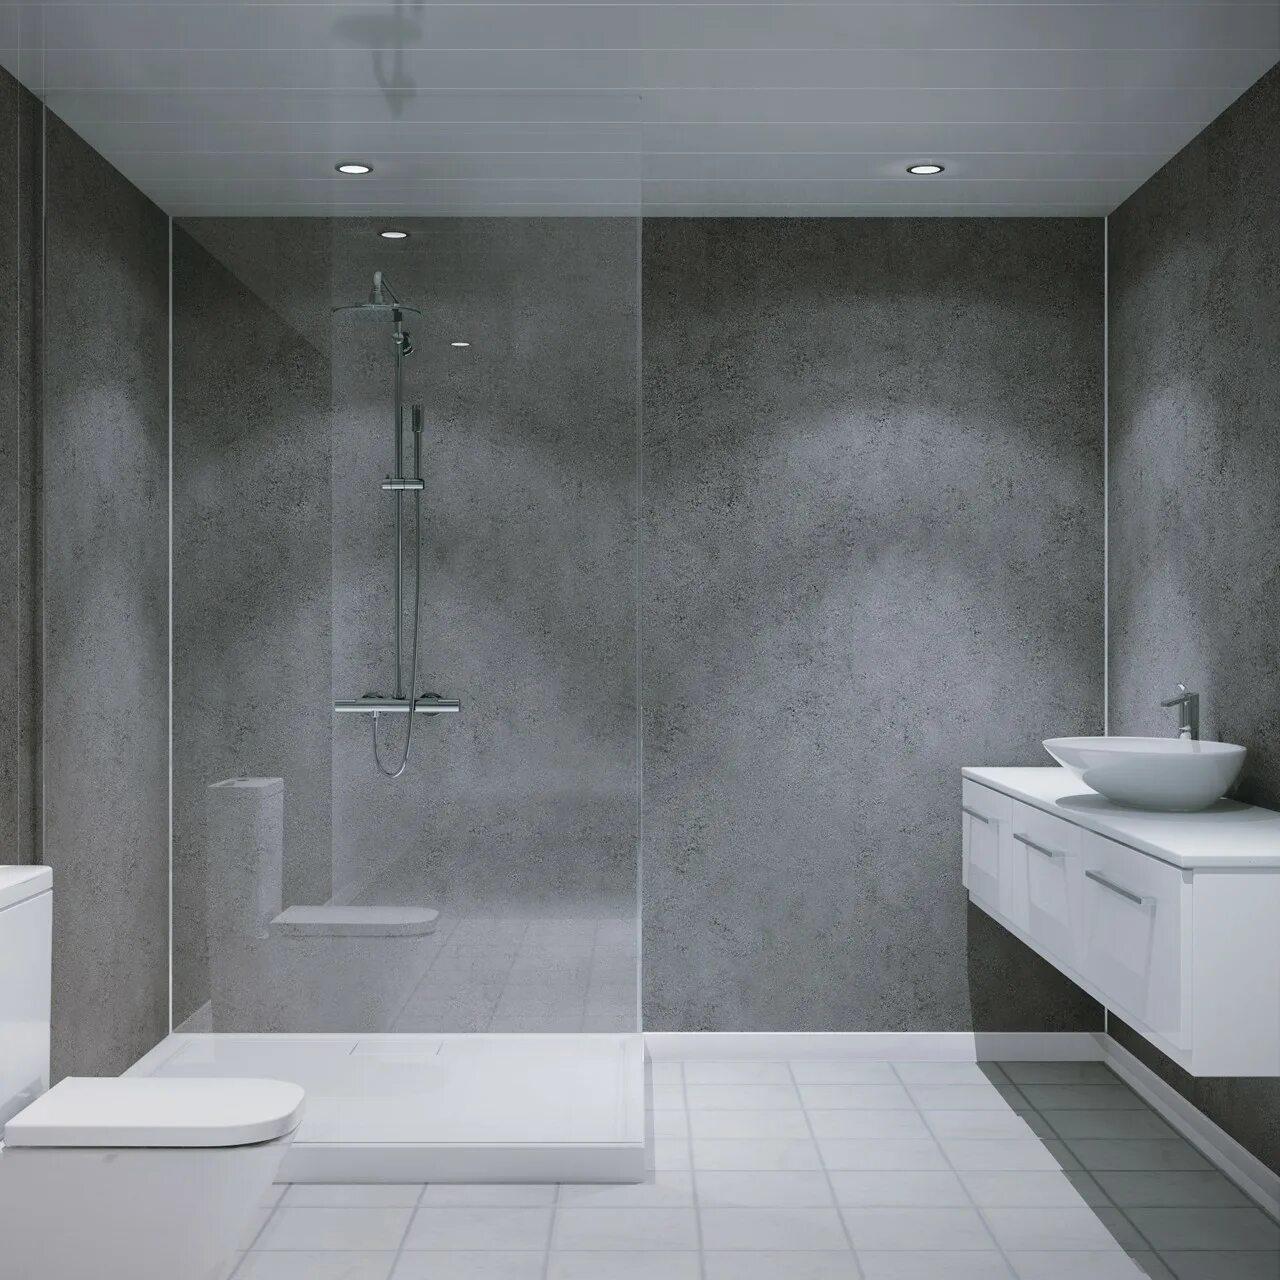 Панельная ванная комната. Ванная панелями. Современные панели для ванной. Серые панели в ванной. Панели для ванной комнаты серые.